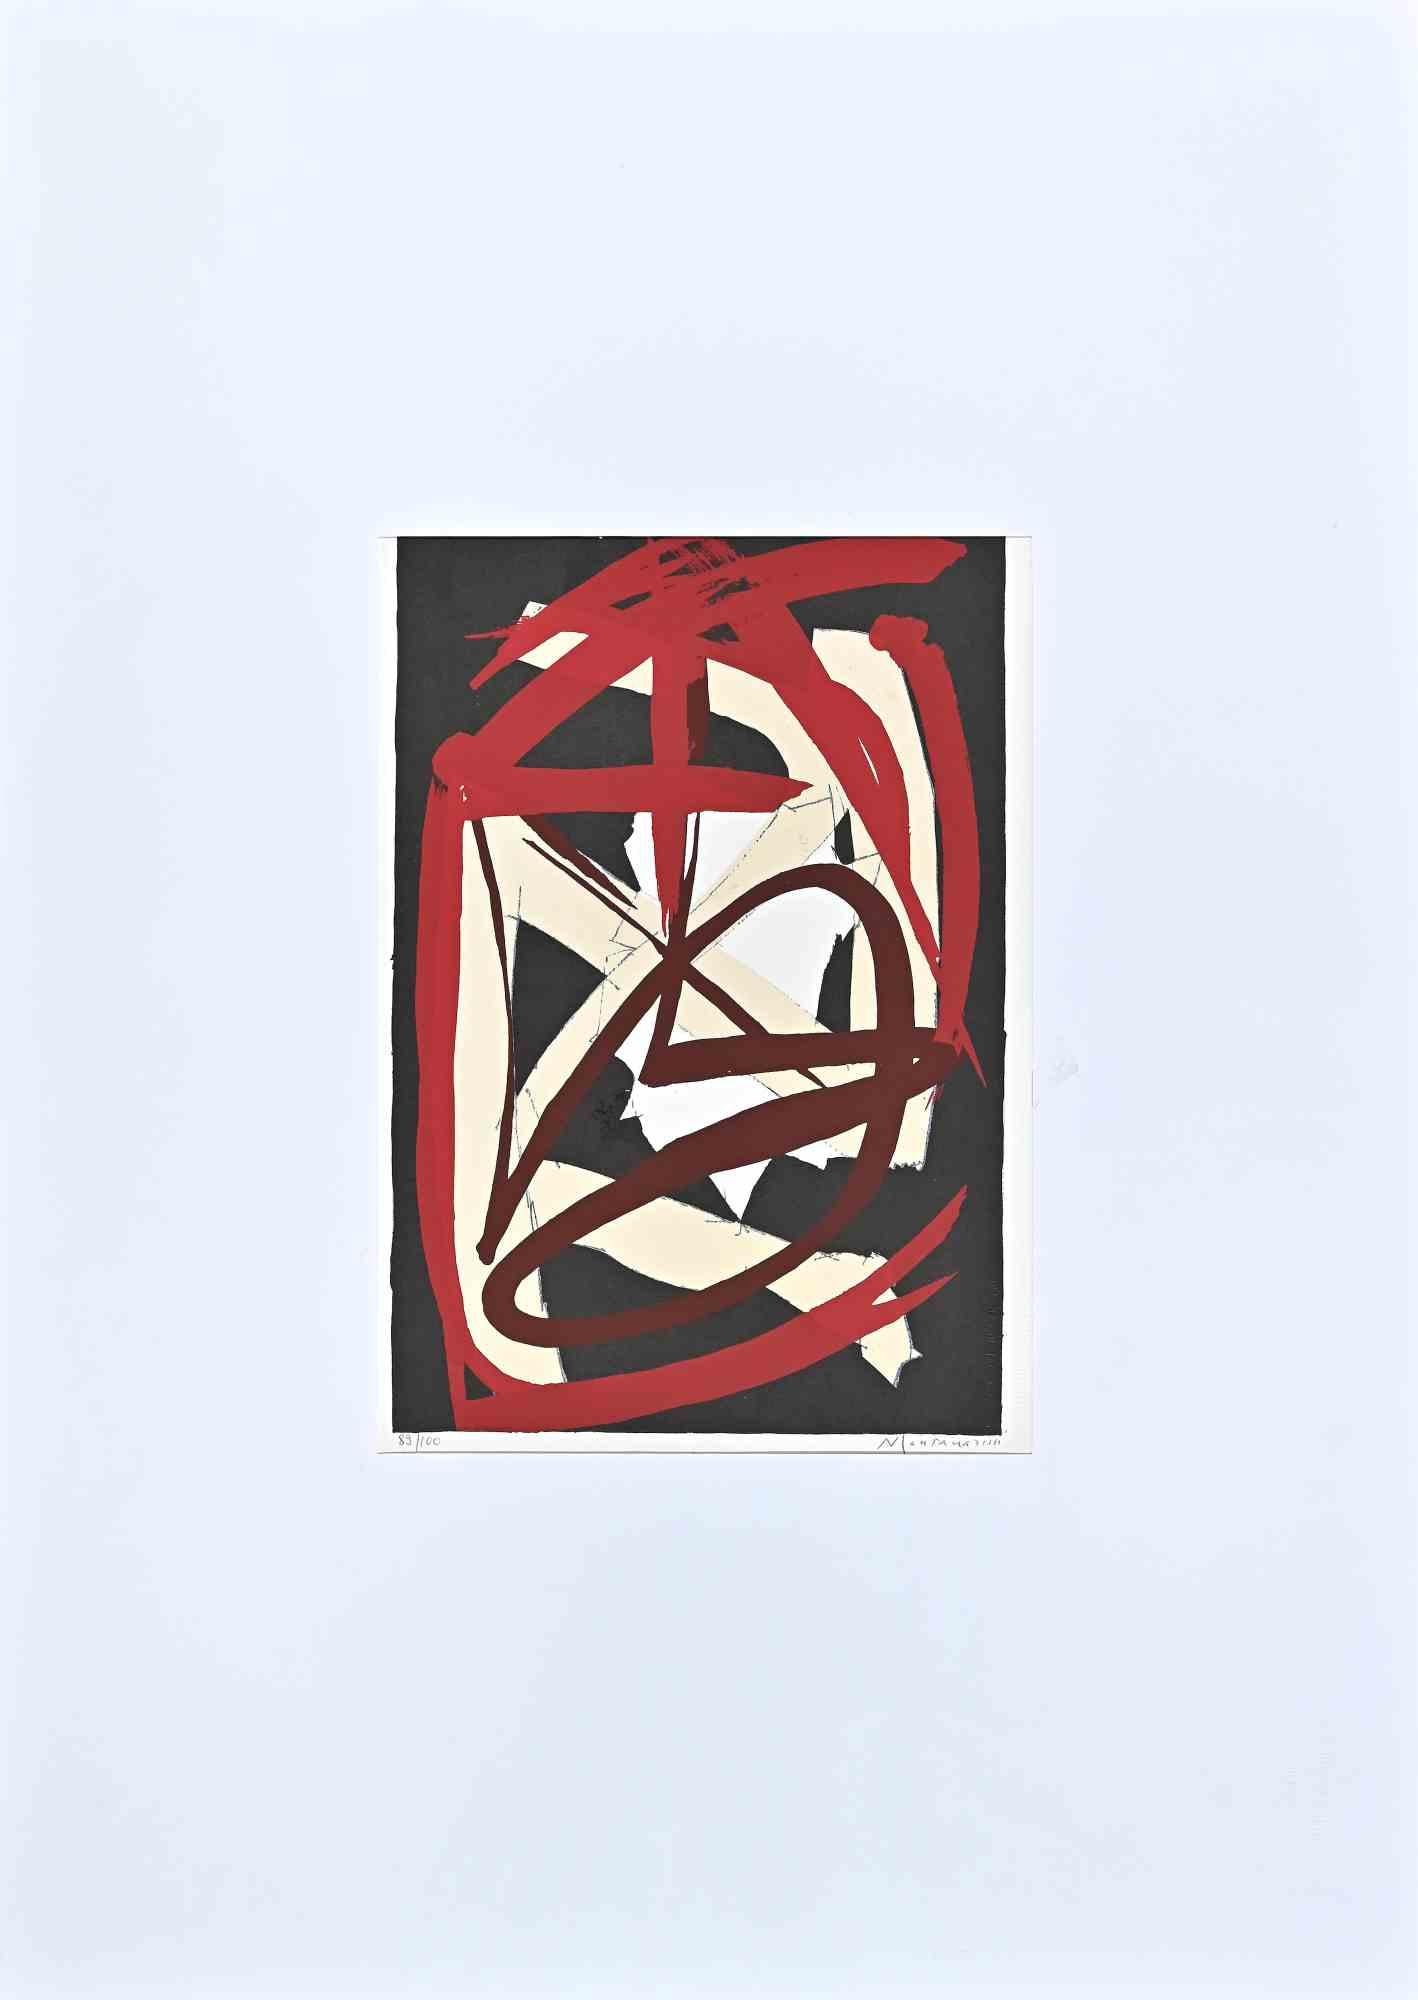 Abstrakte Komposition ist eine Originallithographie von Luigi Montanarini aus dem Jahr 1973.

Limitierte Auflage von 100 Exemplaren, Herausgeber "La Nuova Foglio SPA".

Sehr guter Zustand auf einem weißen Passepartout aus Karton (70x50